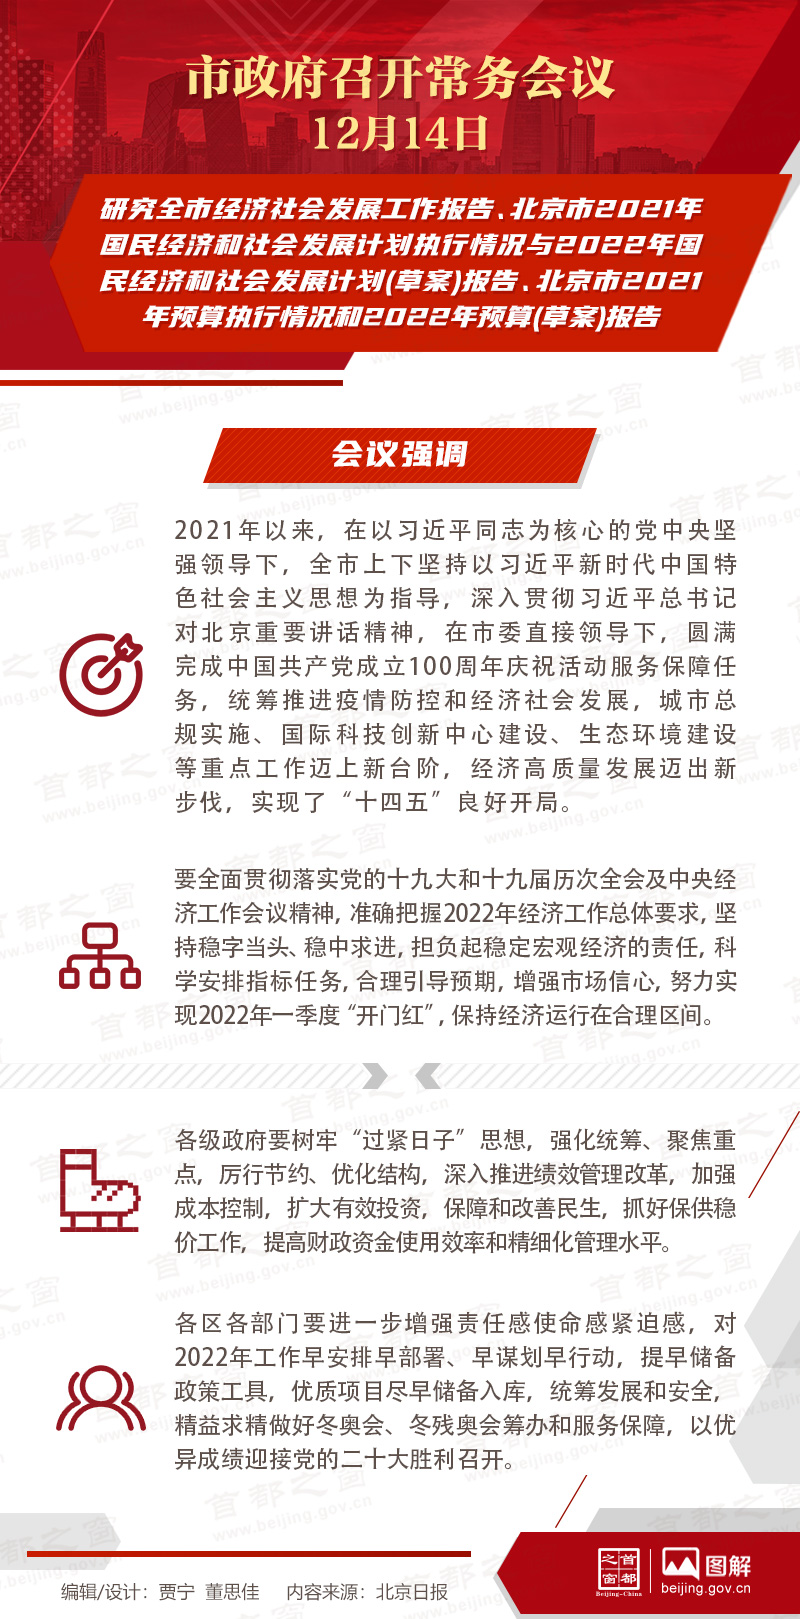 市政府常務會議：研究全市經濟社會發展工作報告、北京市2021年國民經濟和社會發展計劃執行情況與2022年國民經濟和社會發展計劃(草案)報告、北京市2021年預算執行情況和2022年預算(草案)報告